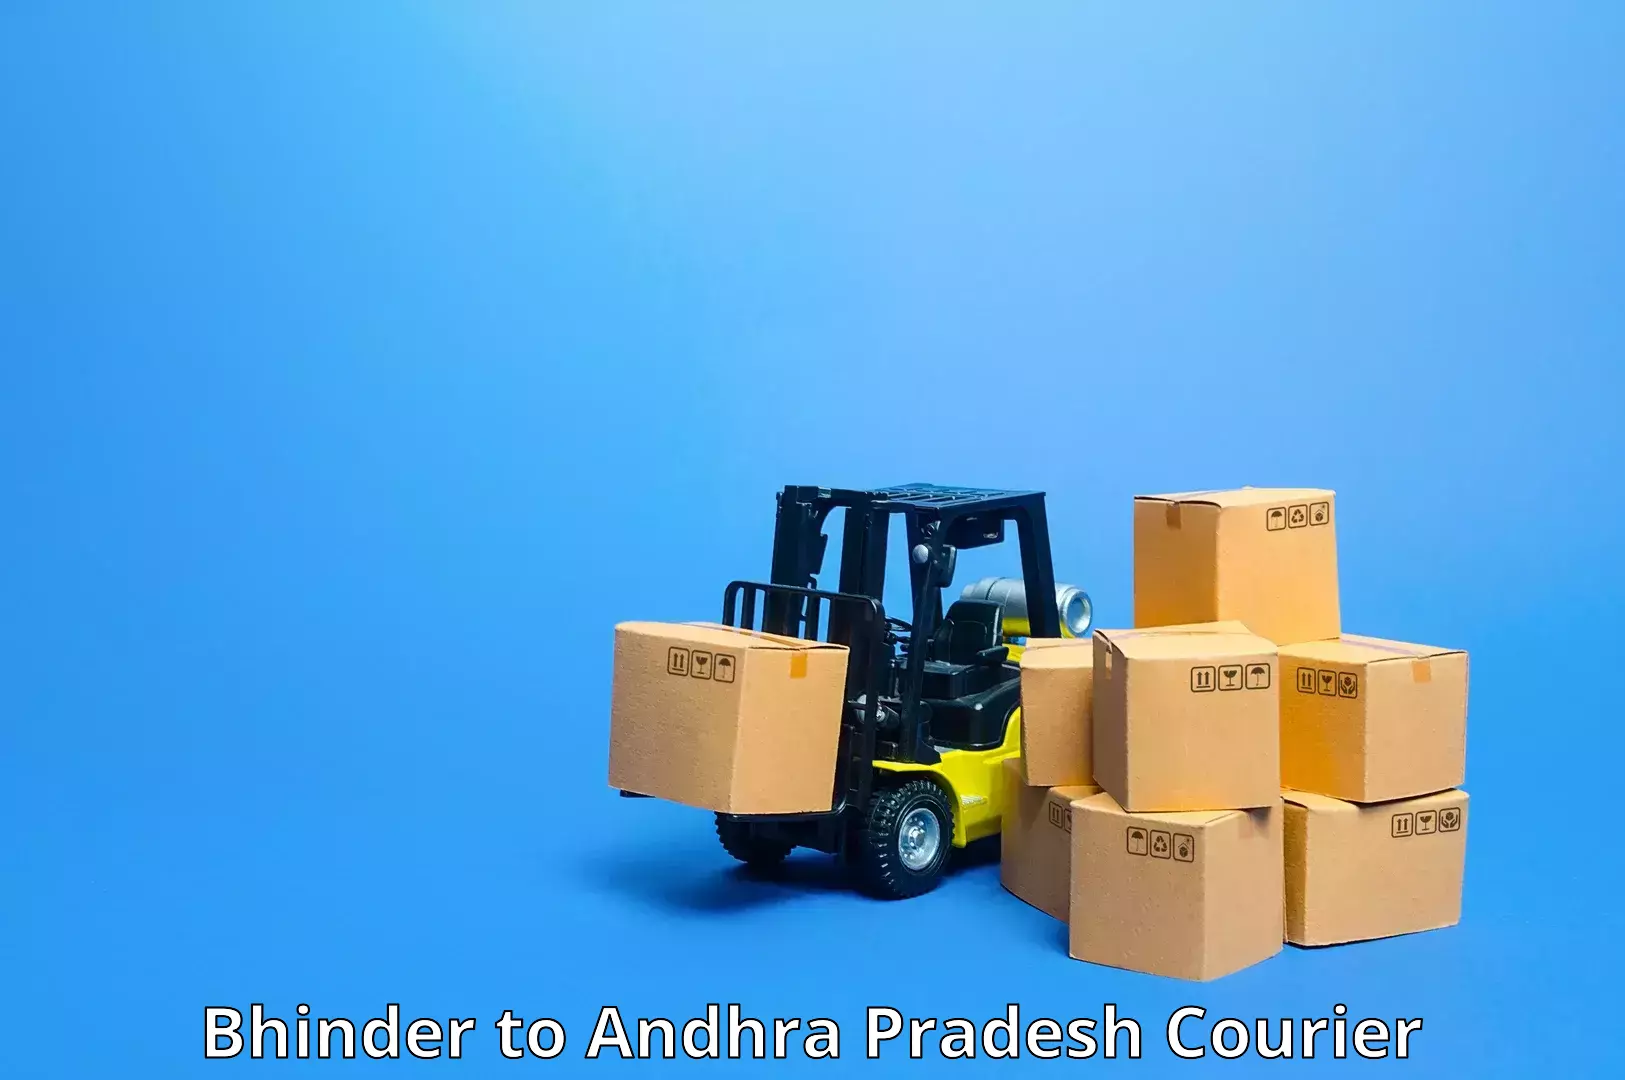 Package tracking Bhinder to Andhra Pradesh